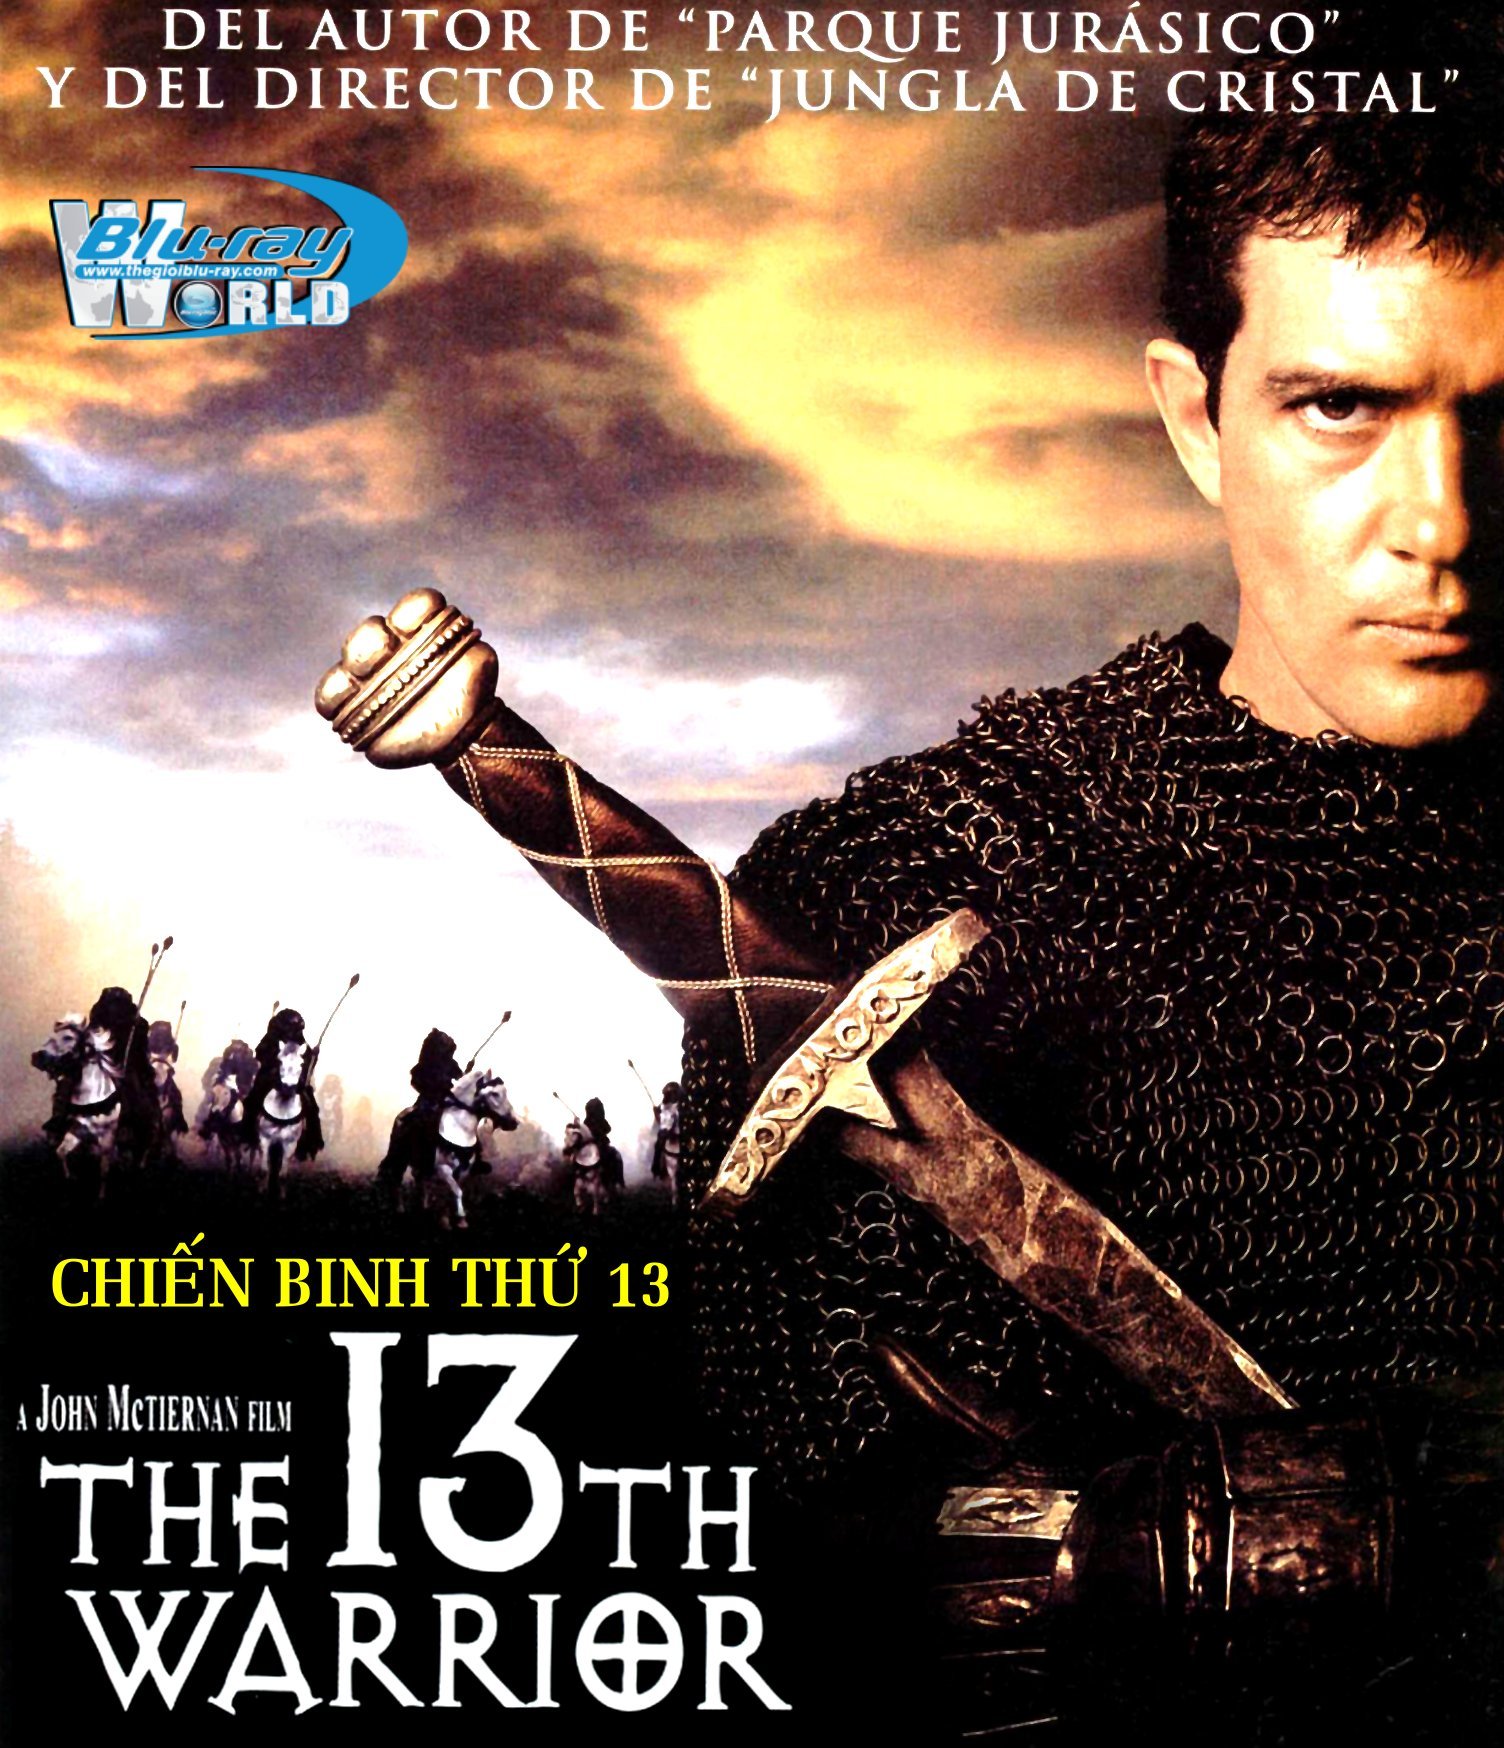 B1706. The 13th Warrior - CHIẾN BINH THỨ 13 2D 25G (DTS-HD MA 5.1) 